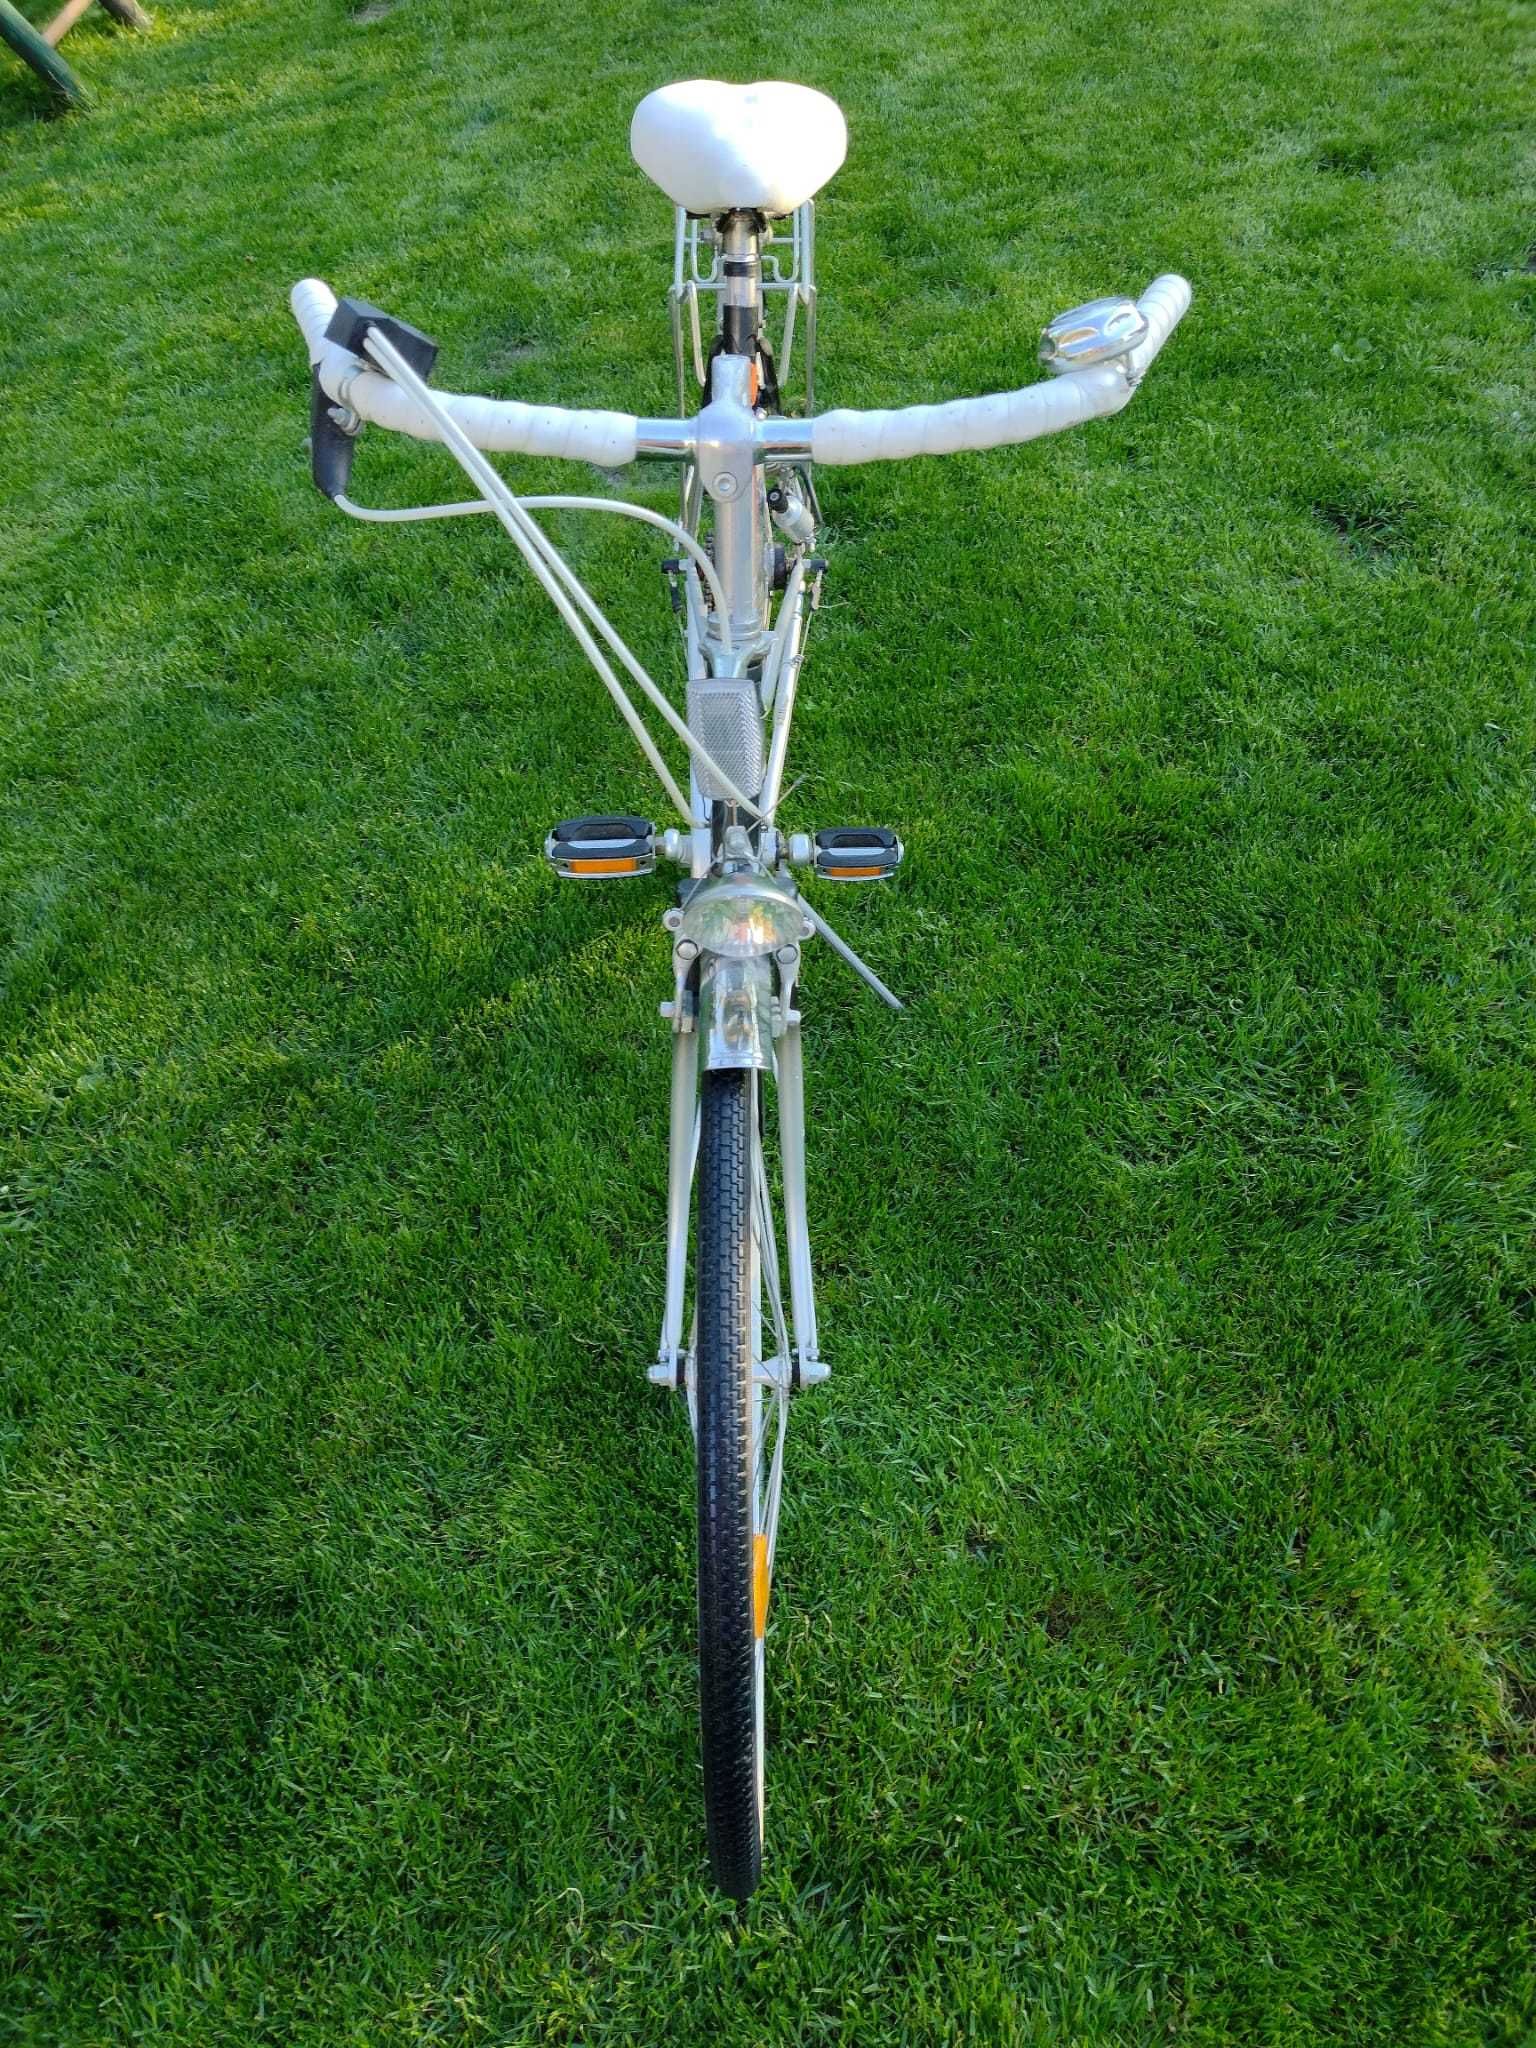 bicicleta de dama de oraș Heidemann